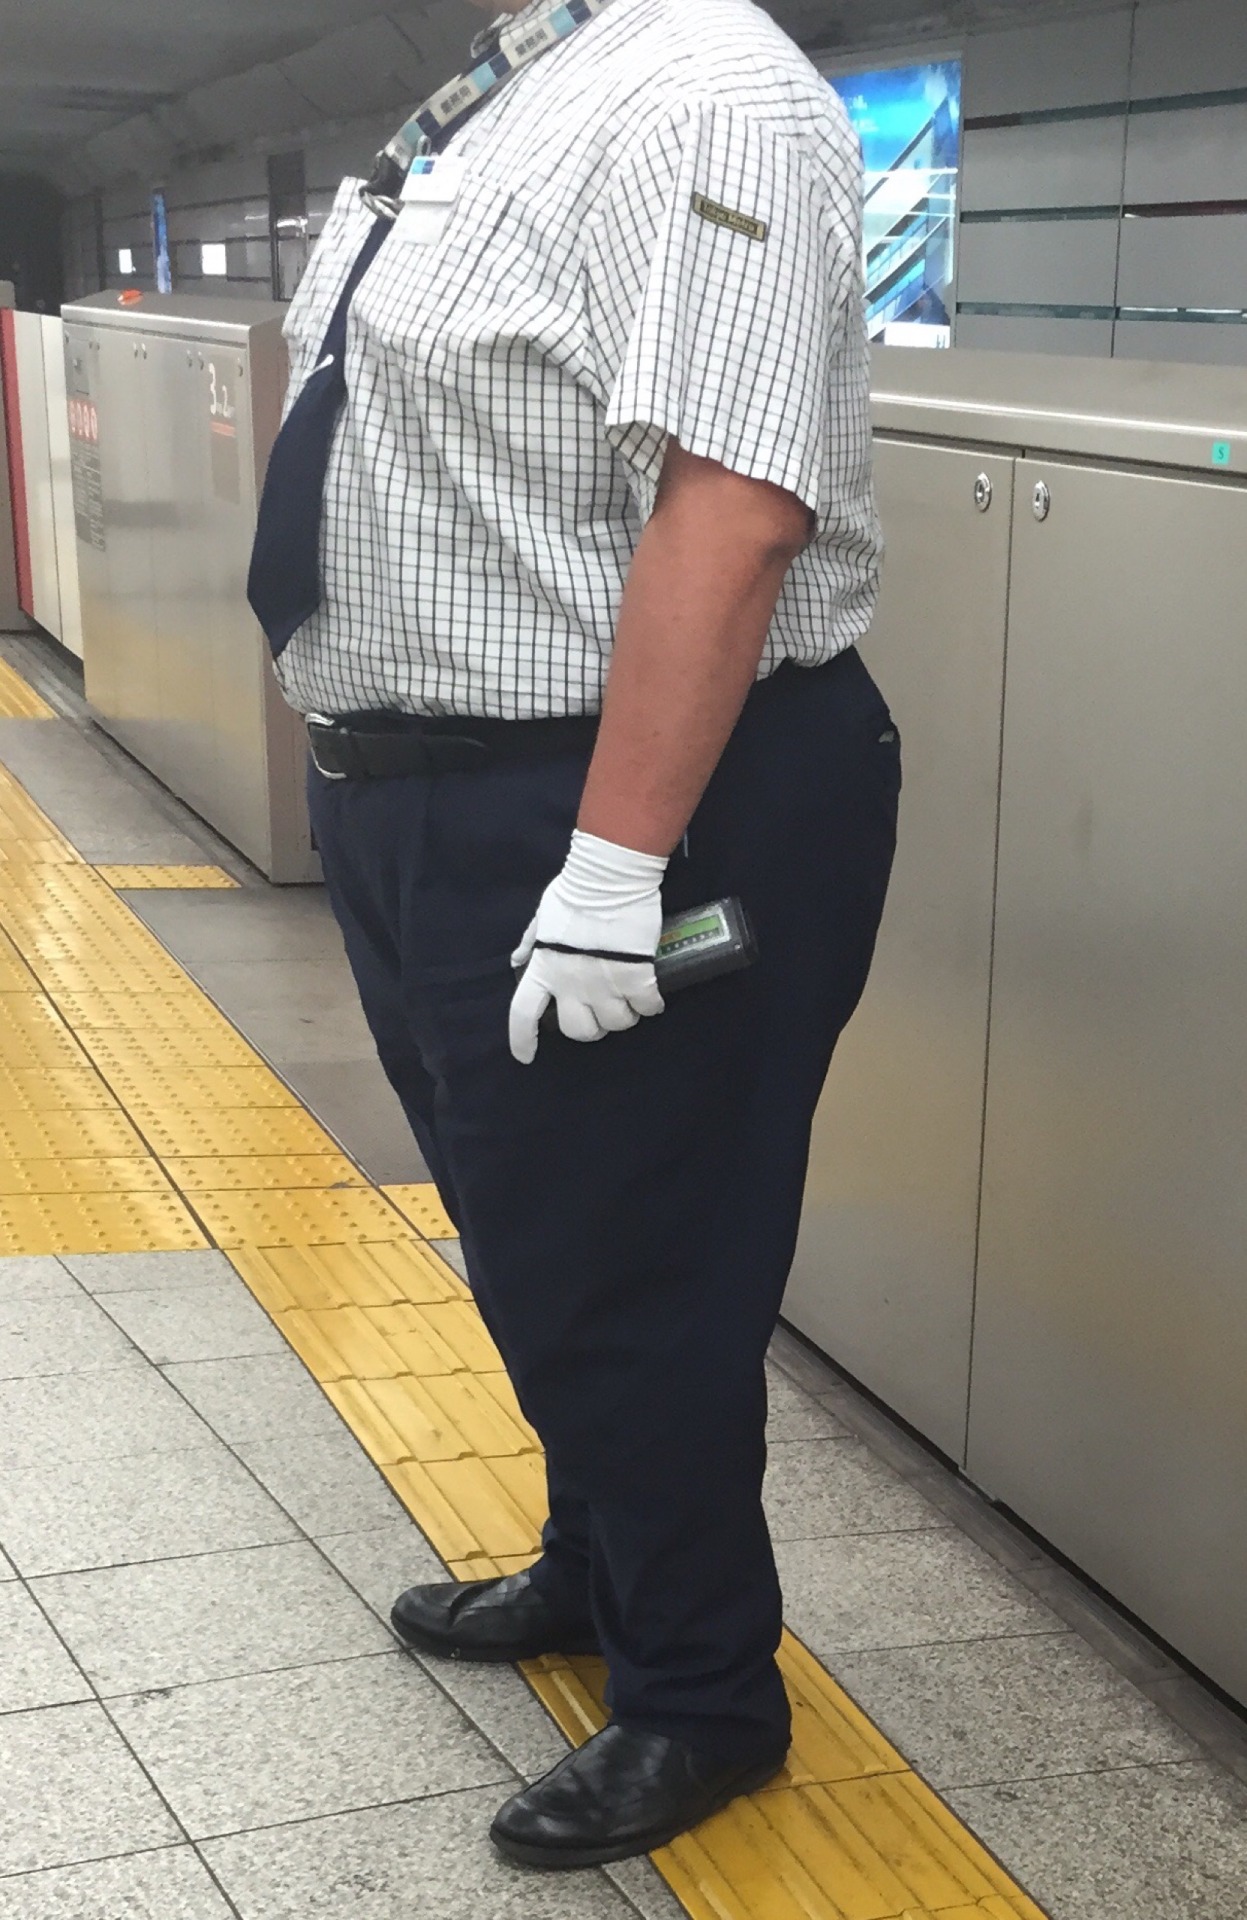 Miso On たんぶら 赤坂見附駅に可愛い駅員さんいますよね